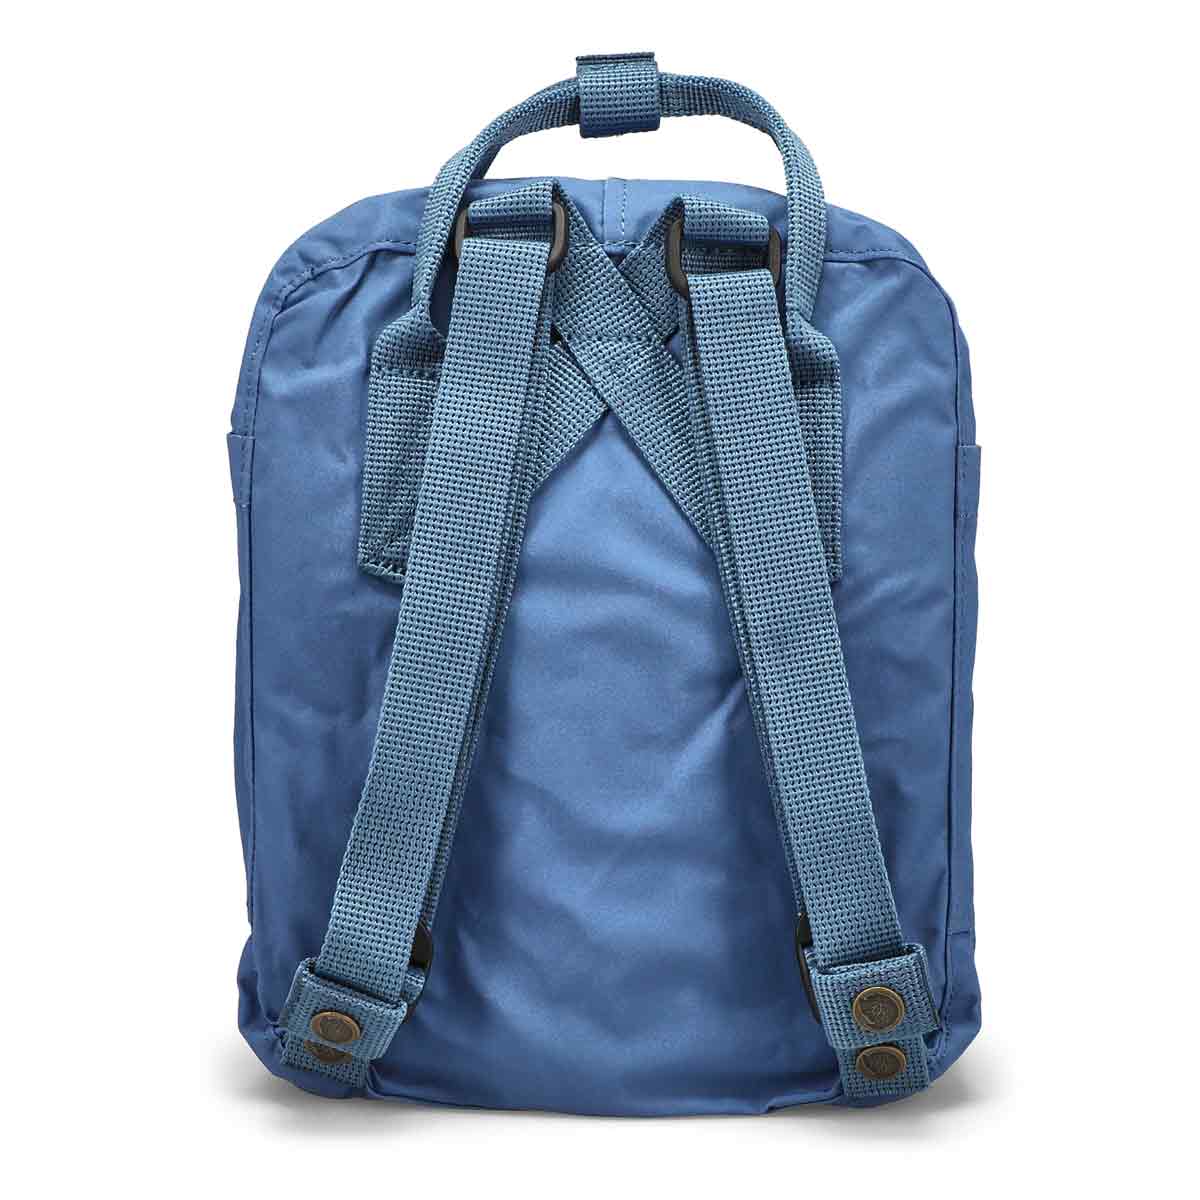 Fjallraven Kanken Mini Backpack - Blue Ridge